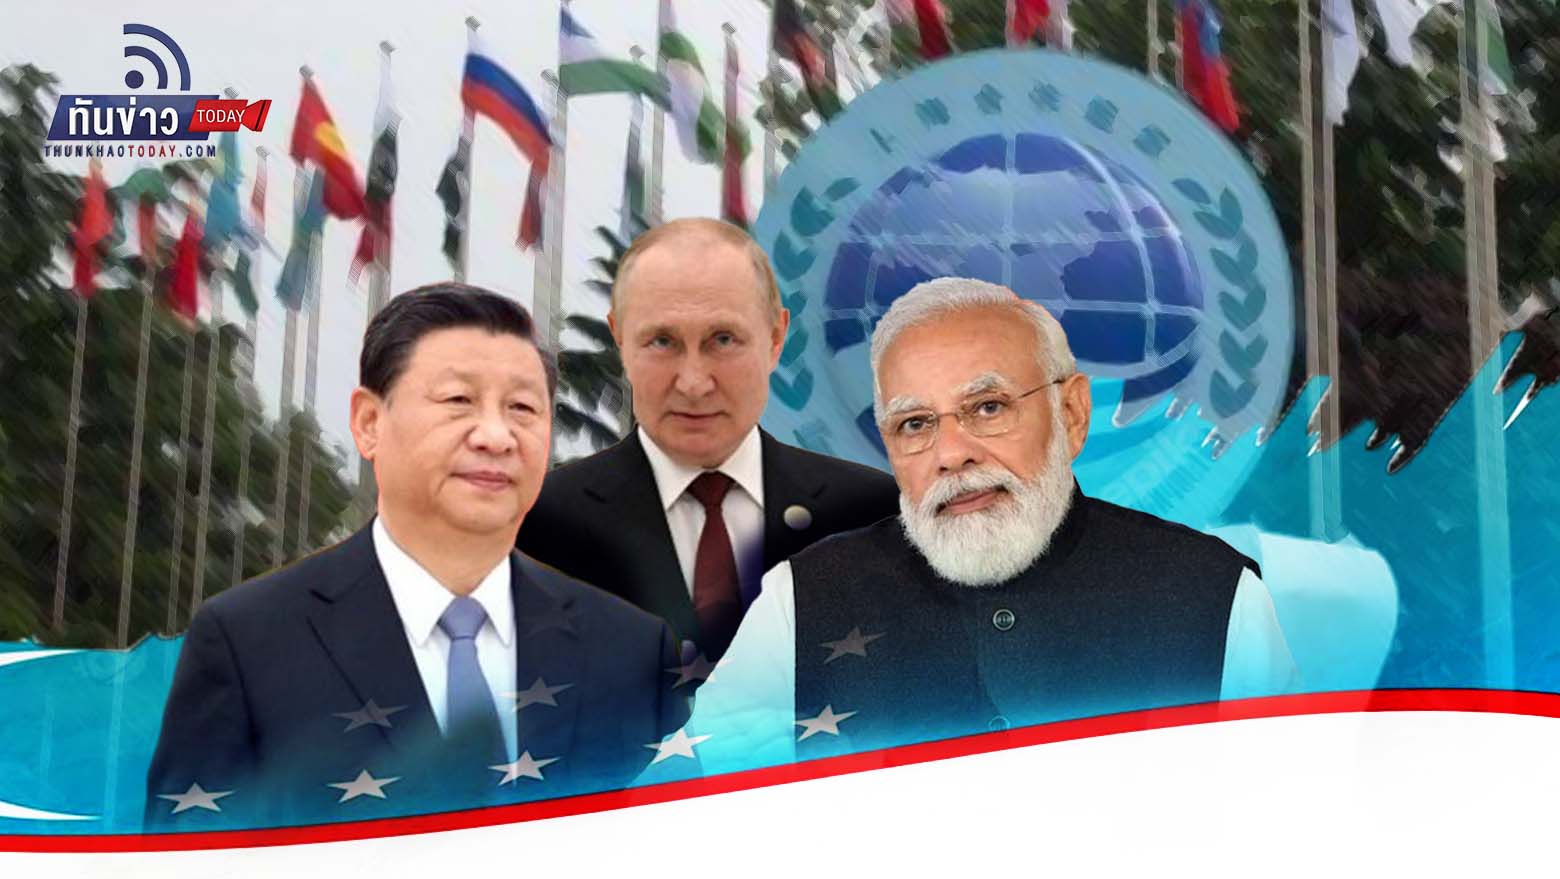 จับตา 3 ผู้นำจีน-รัสเซีย-อินเดีย เจอกันที่ อุซเบกิสถาน 15-16 ก.ย.นี้ ในงานการประชุมสุดยอดองค์การความร่วมมือเซี่ยงไฮ้ (SCO)